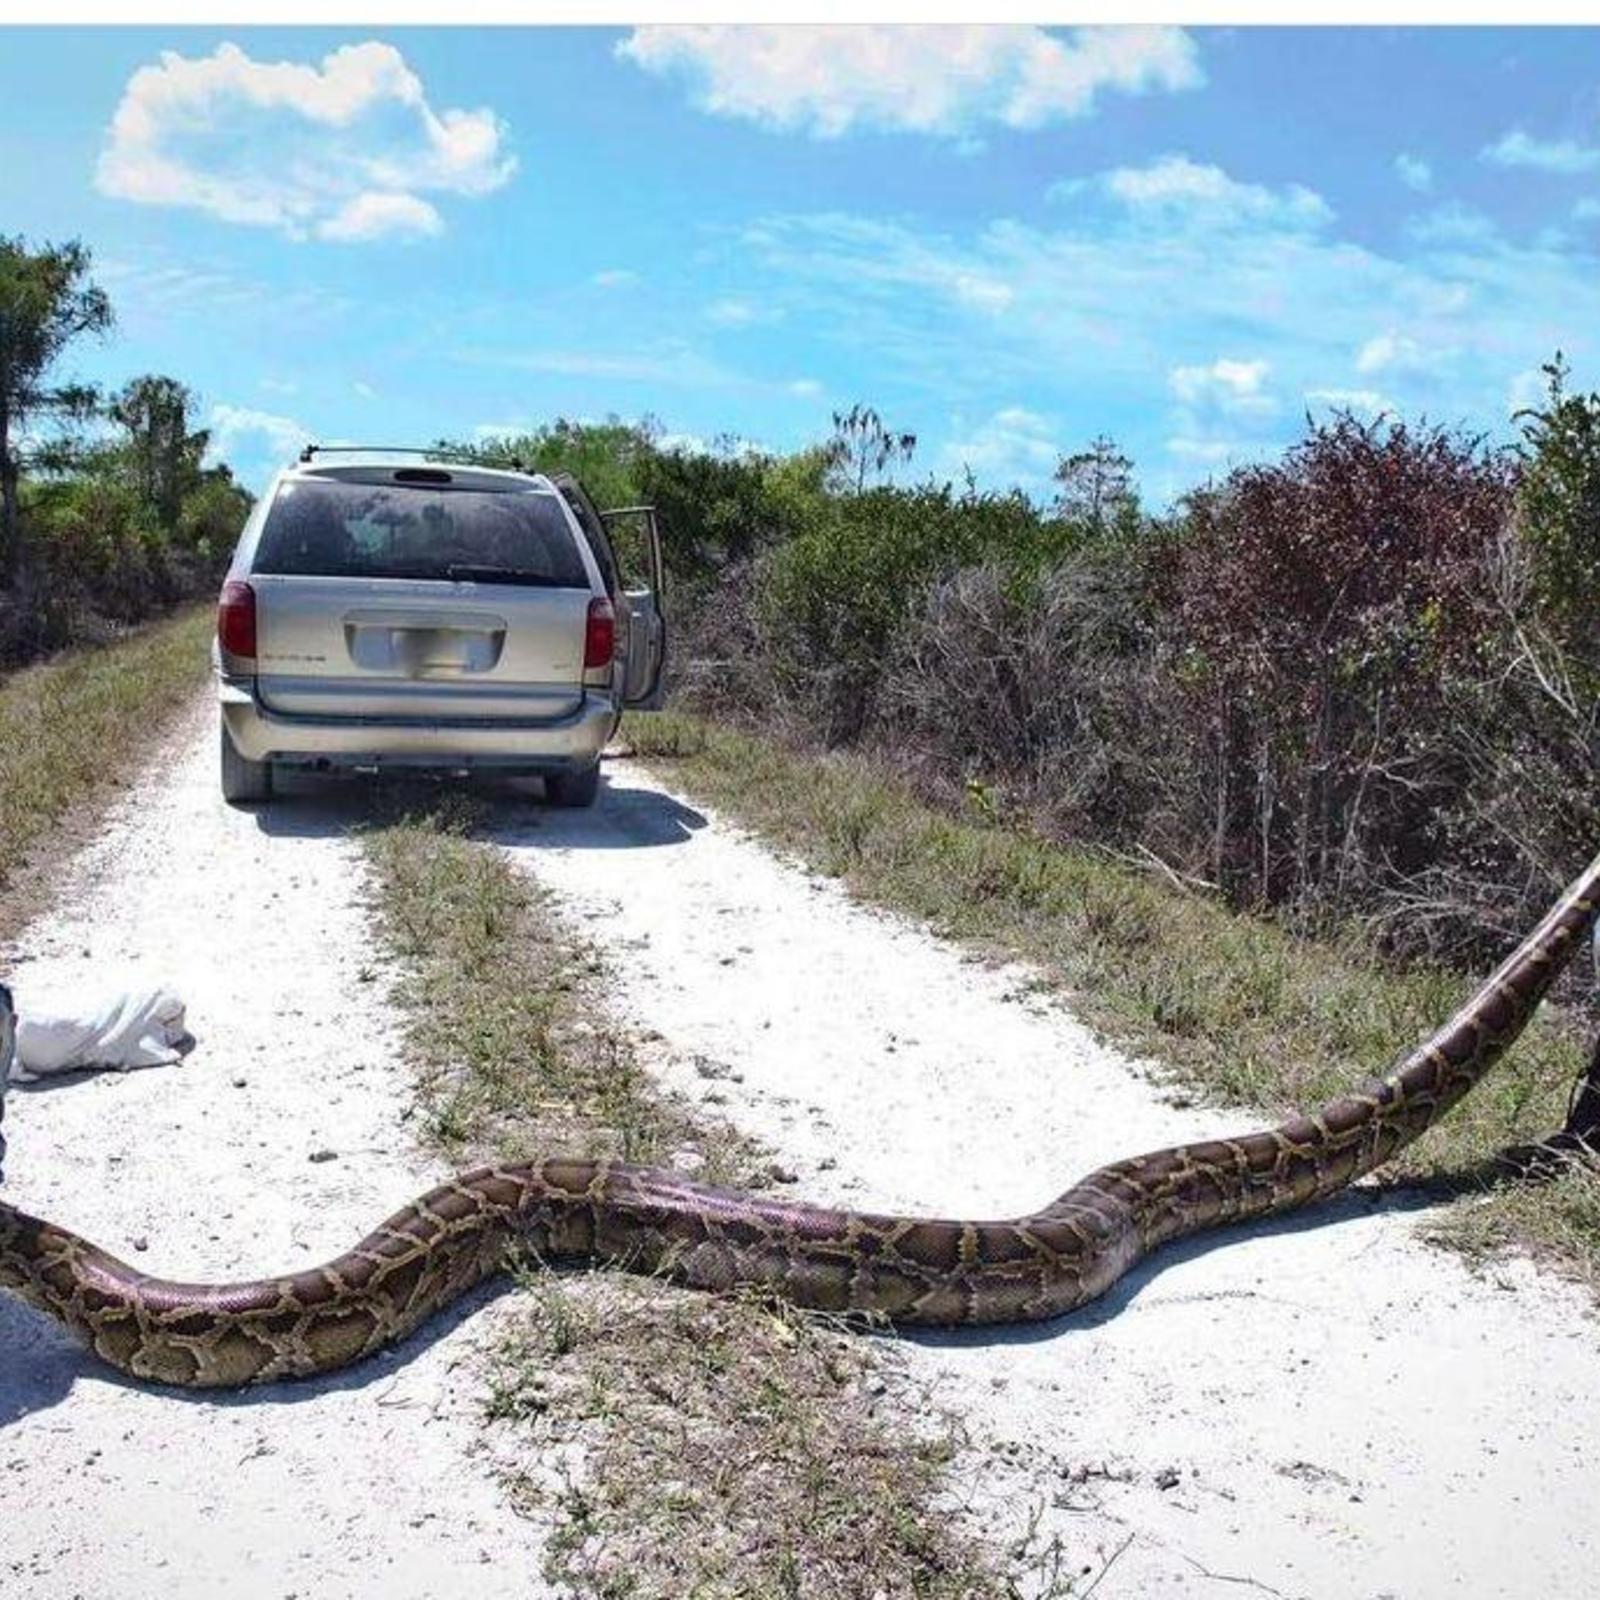 фото самой большой змеи на планете